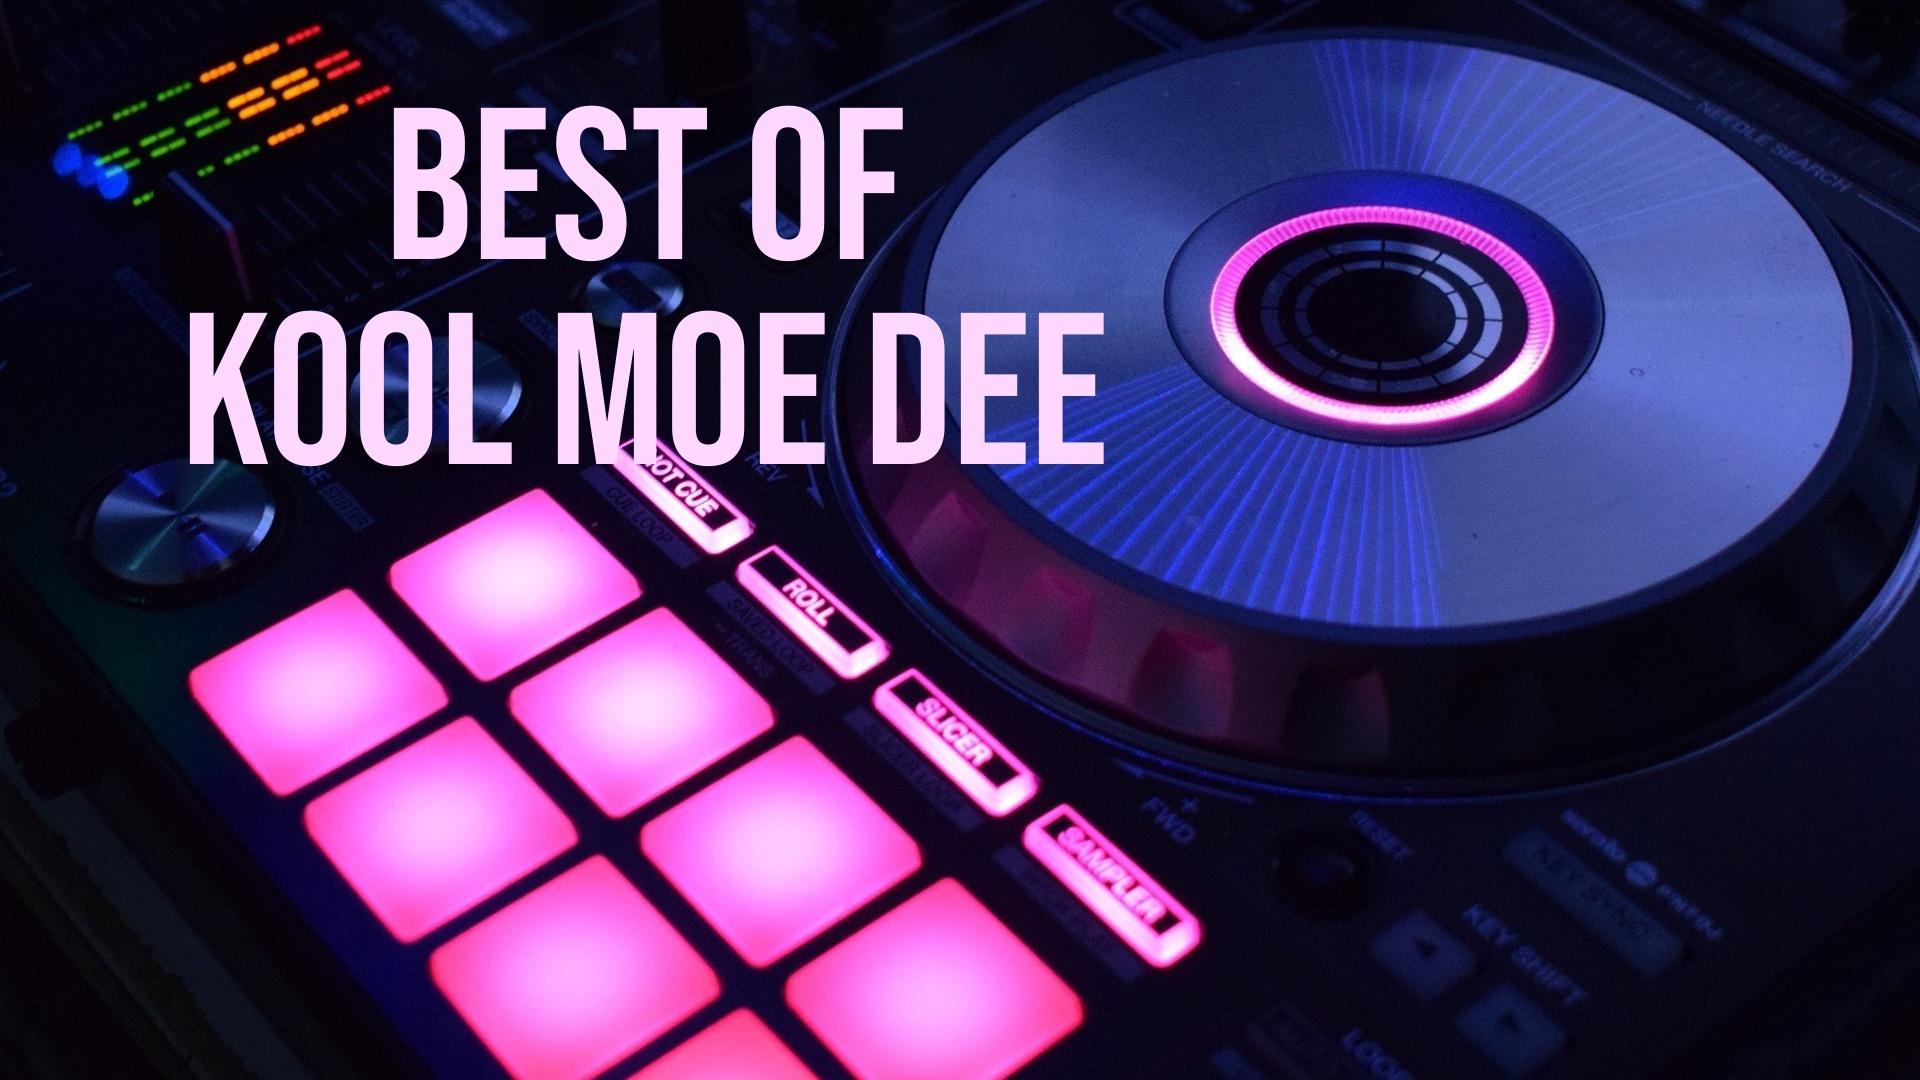 Watch Best Of Kool Moe Dee Streaming Online on Philo (Free Trial)